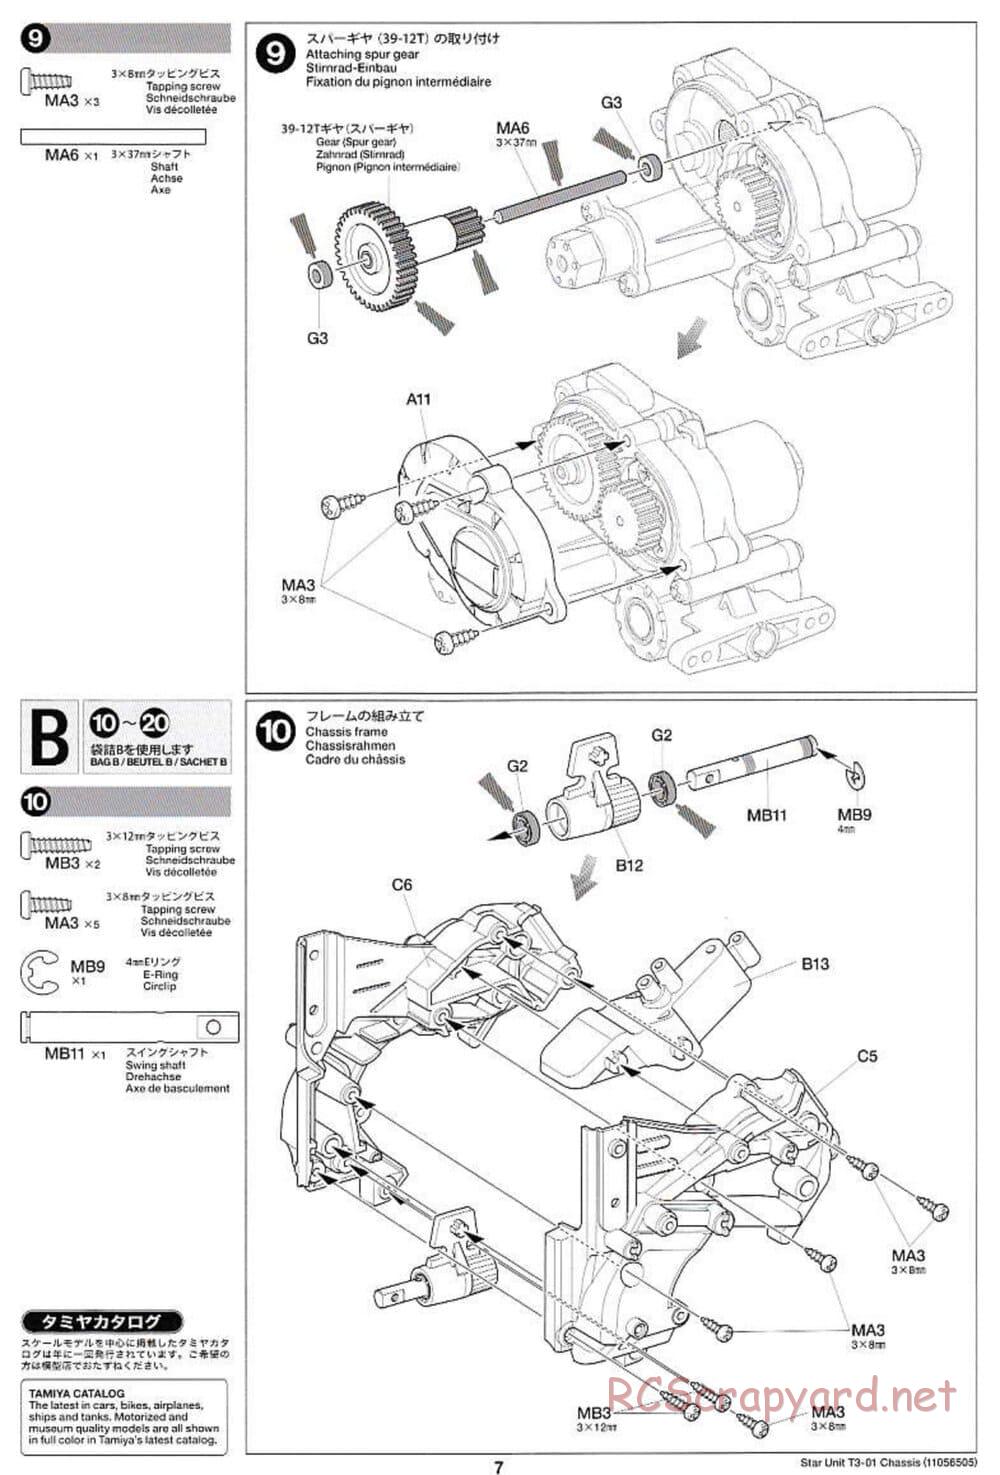 Tamiya - T3-01 Chassis - Manual - Page 7